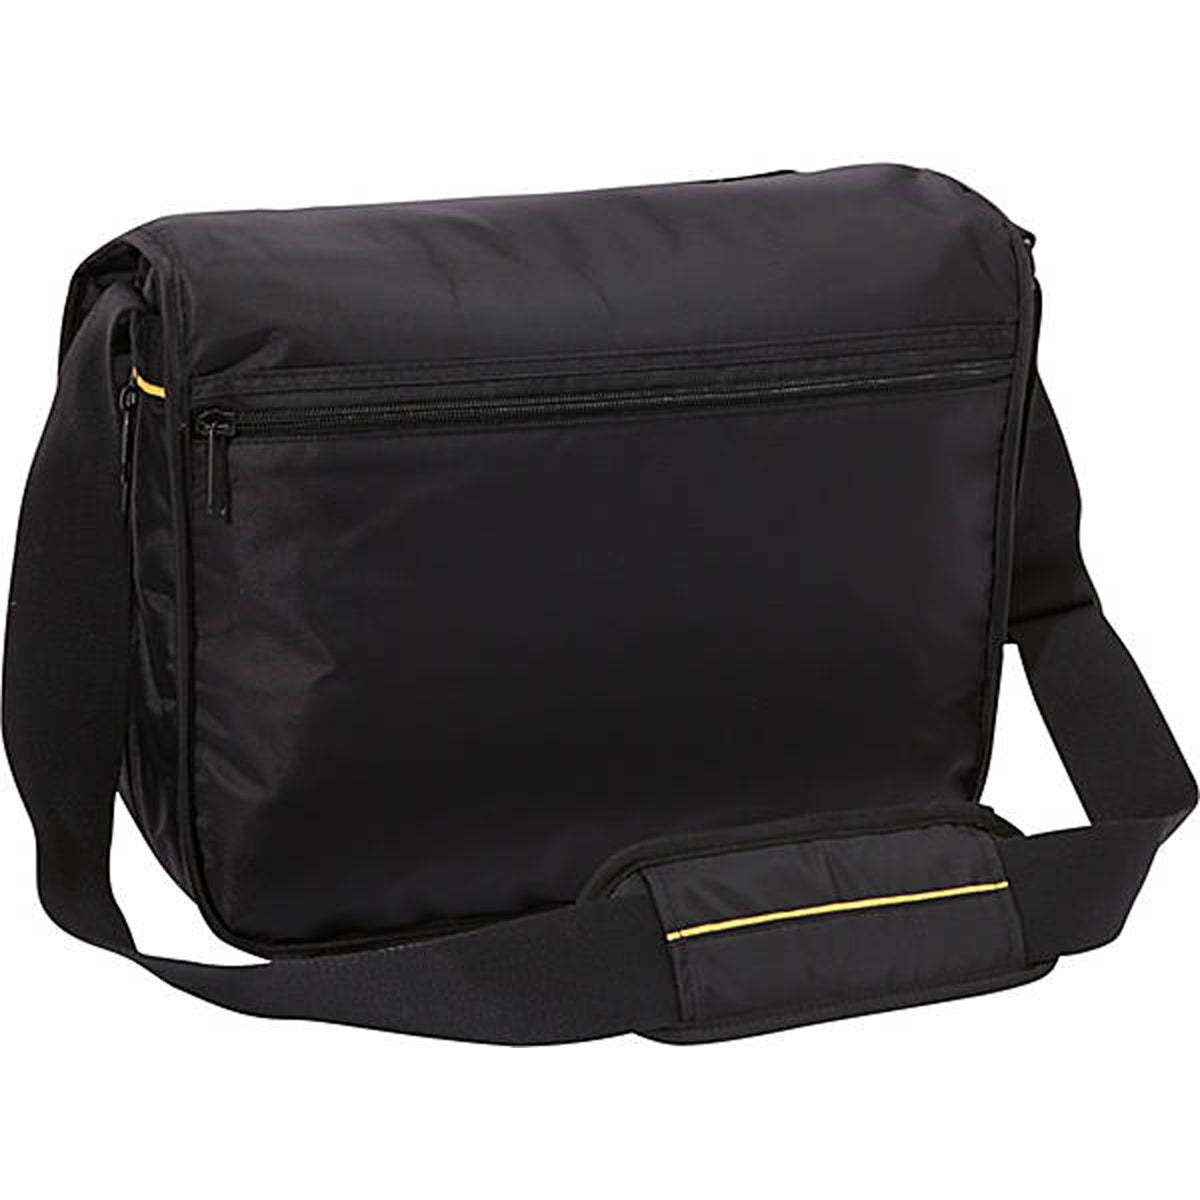 A. Saks EXPANDABLE Messenger Bag – A.Saks Luggage